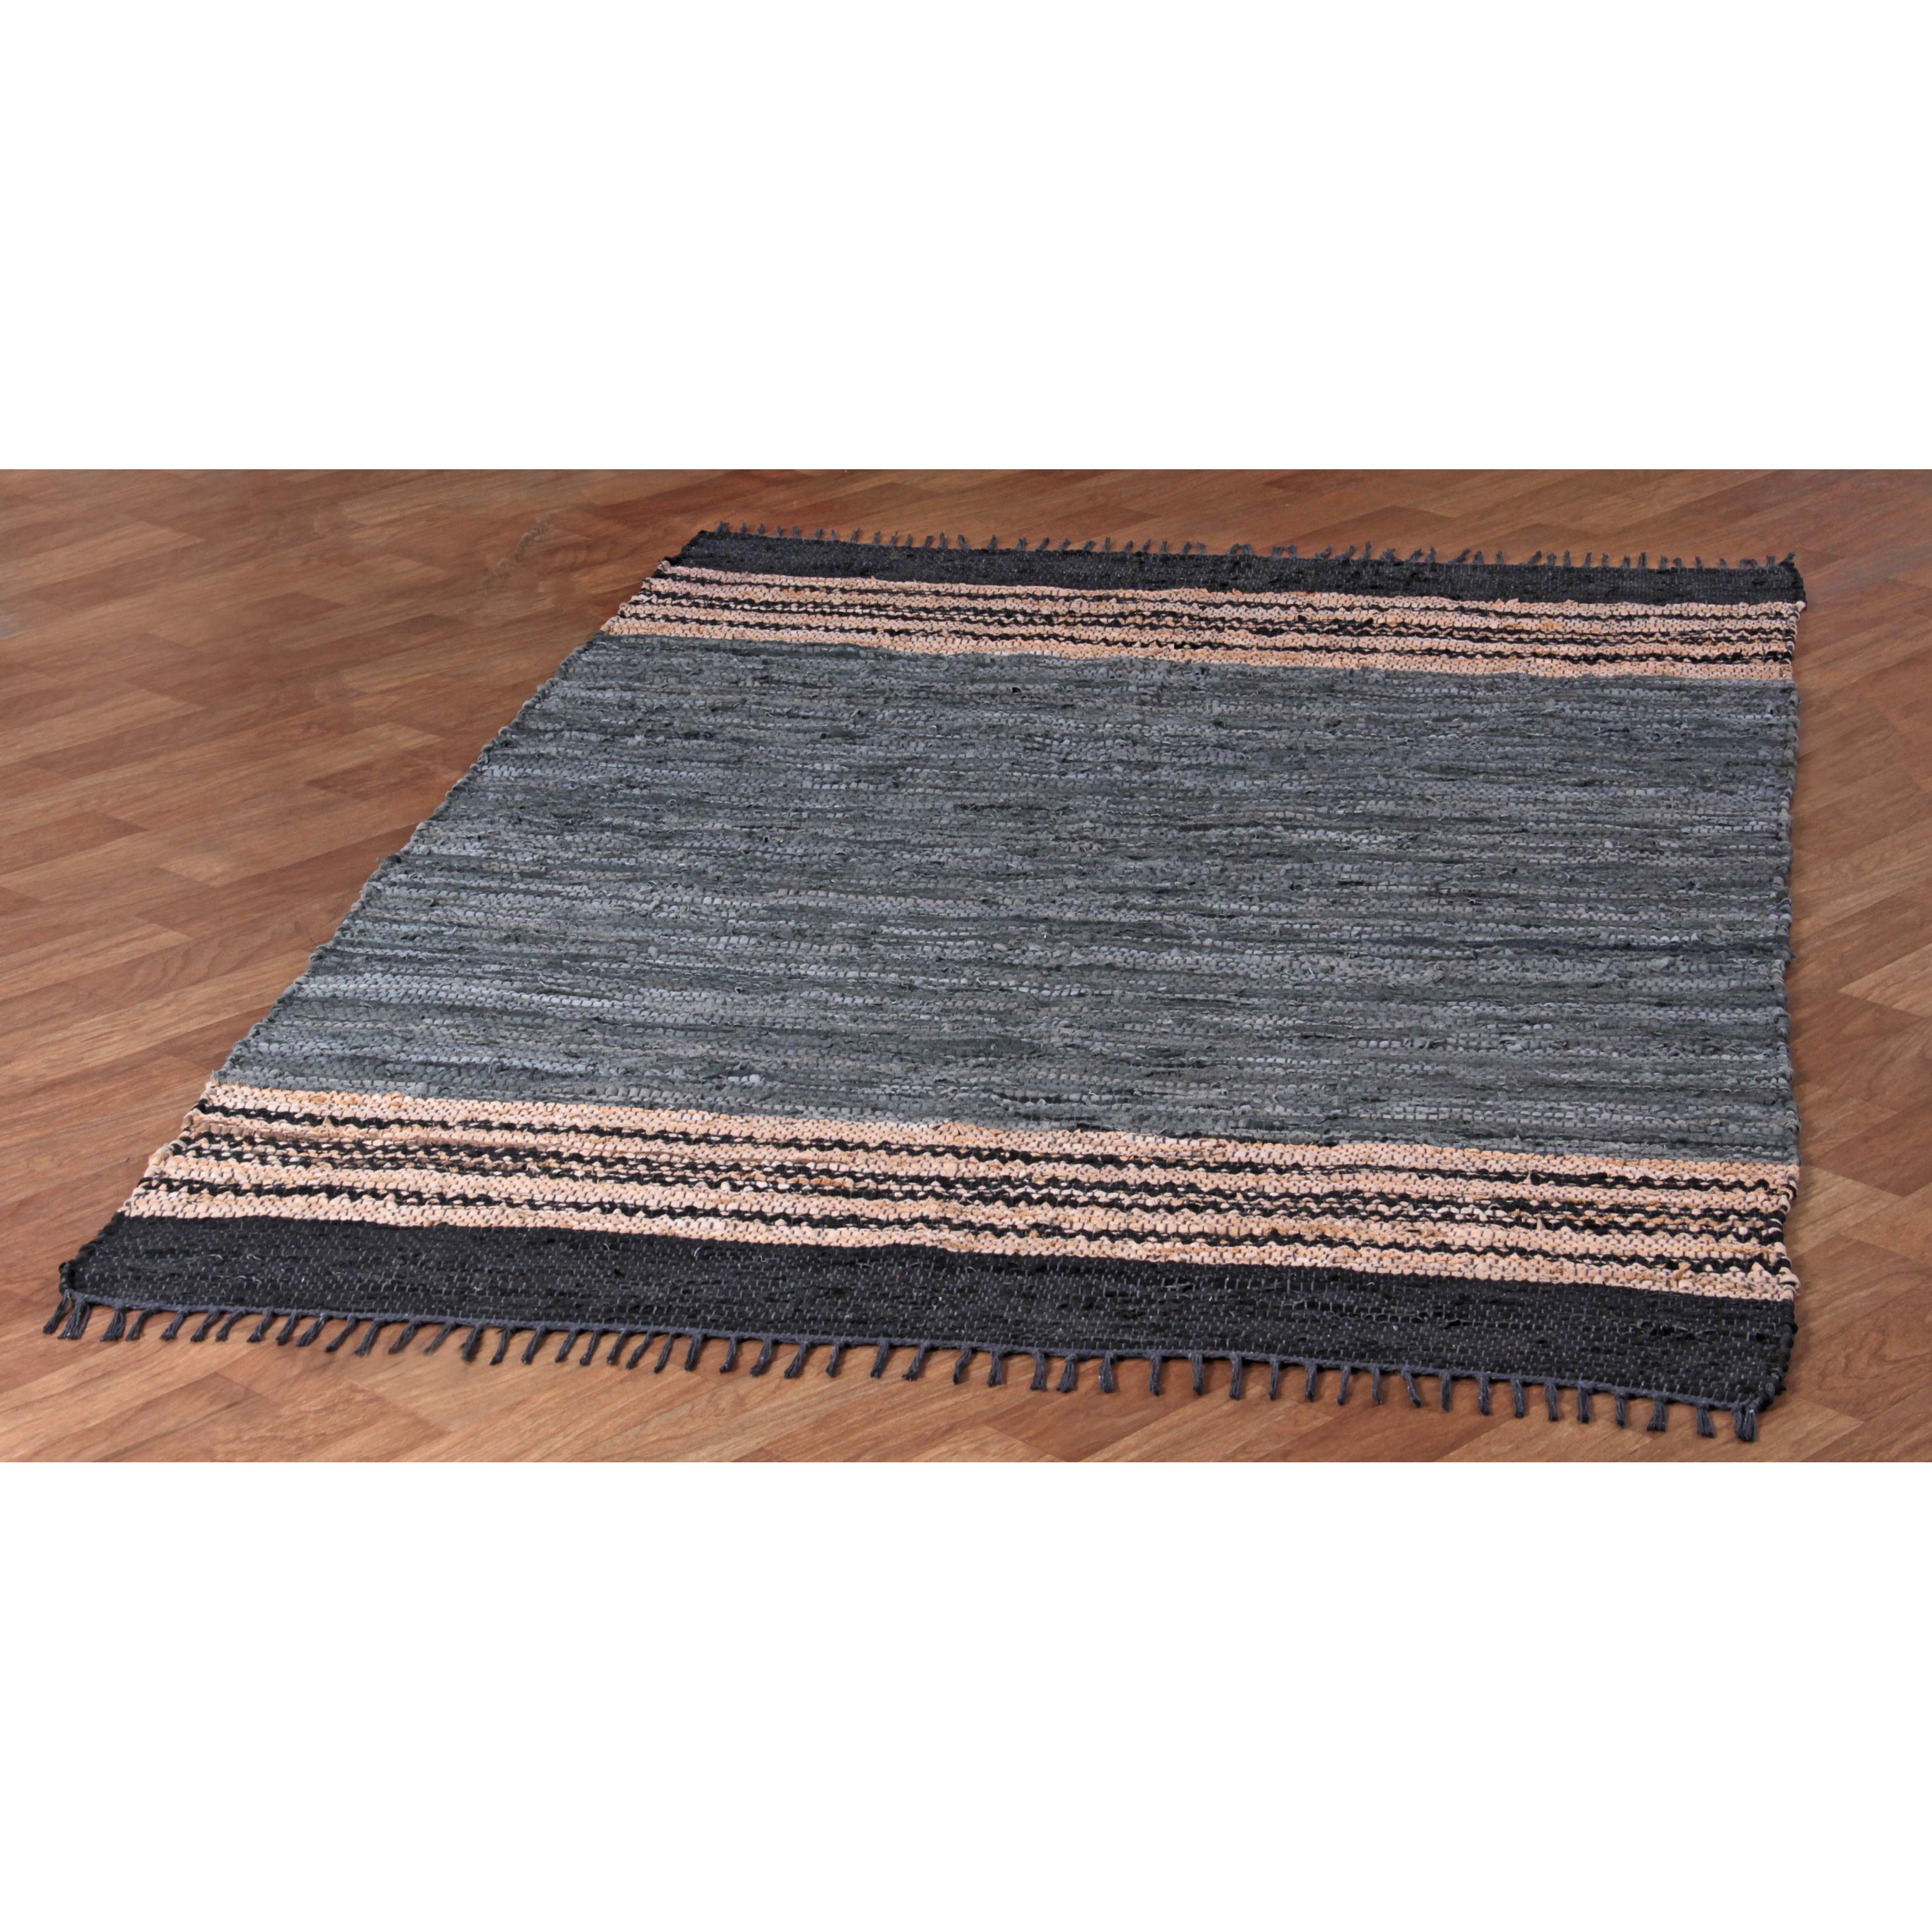 Matador Leather Chindi Rug 9 by 12-Feet Gray